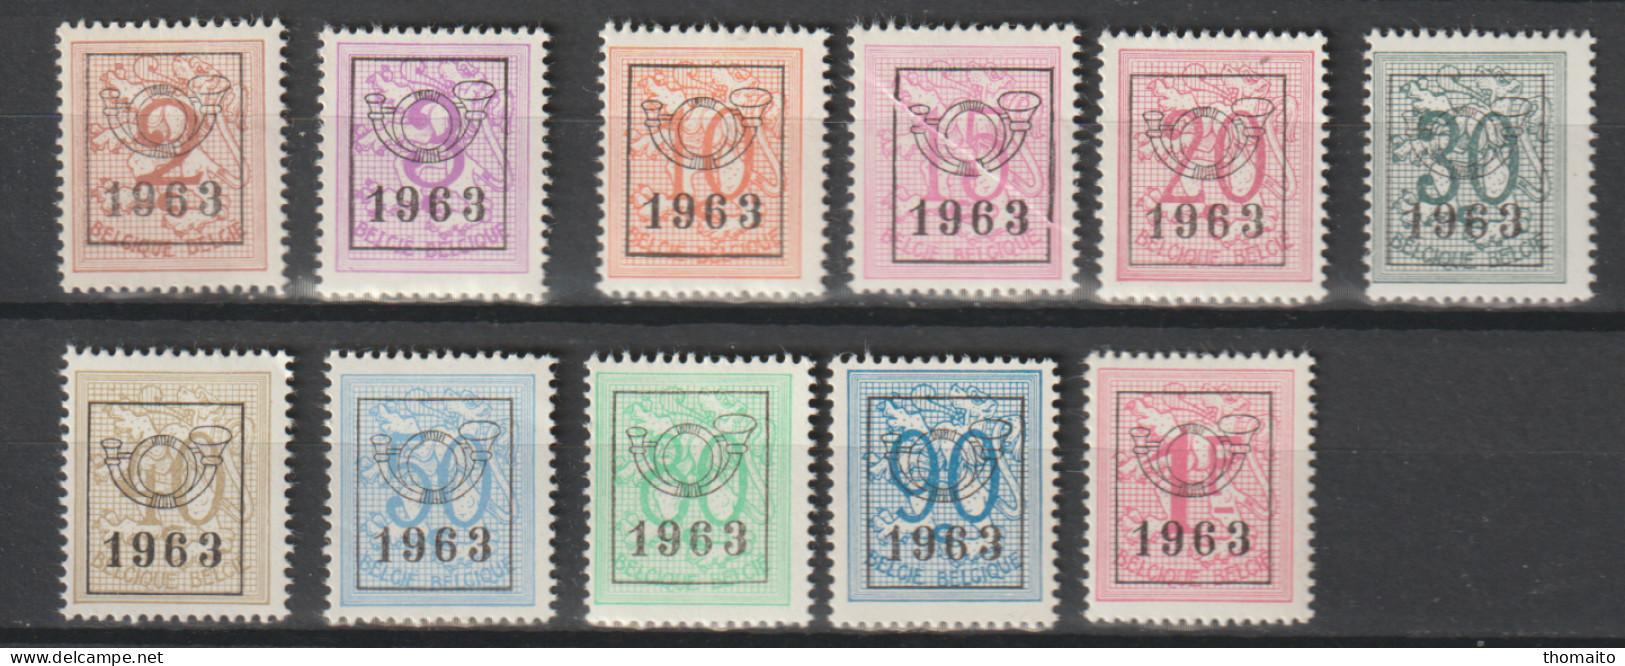 België/Belgique - OBP/COB PRE736-746 - 1963 - Cijfer Op Heraldieke Leeuw - MNH/NSC/** - Typo Precancels 1951-80 (Figure On Lion)